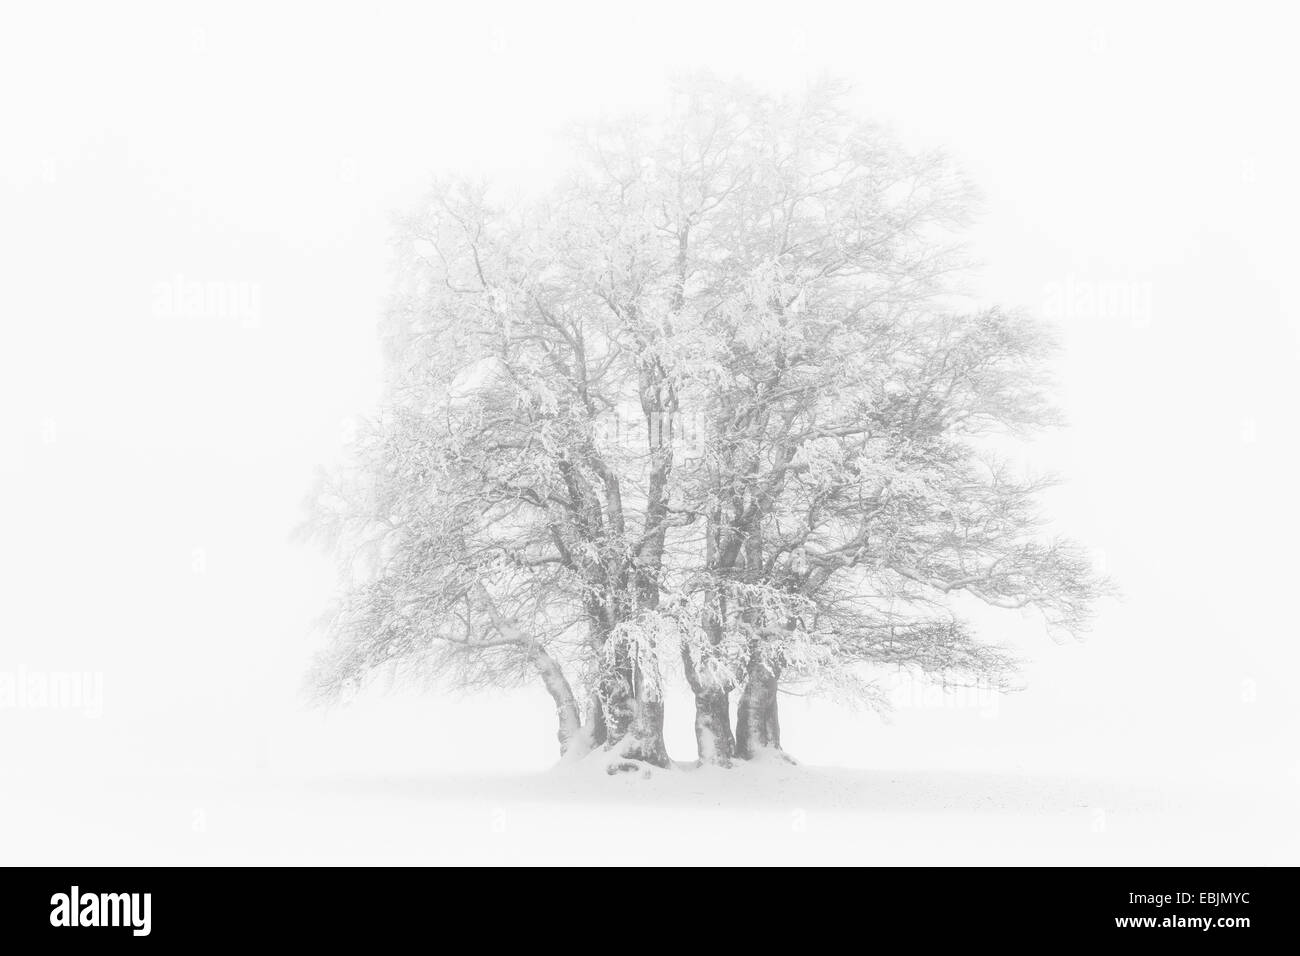 Le hêtre commun (Fagus sylvatica), grove dans un épais brouillard dans un paysage de prairie couverte de neige, Suisse Banque D'Images